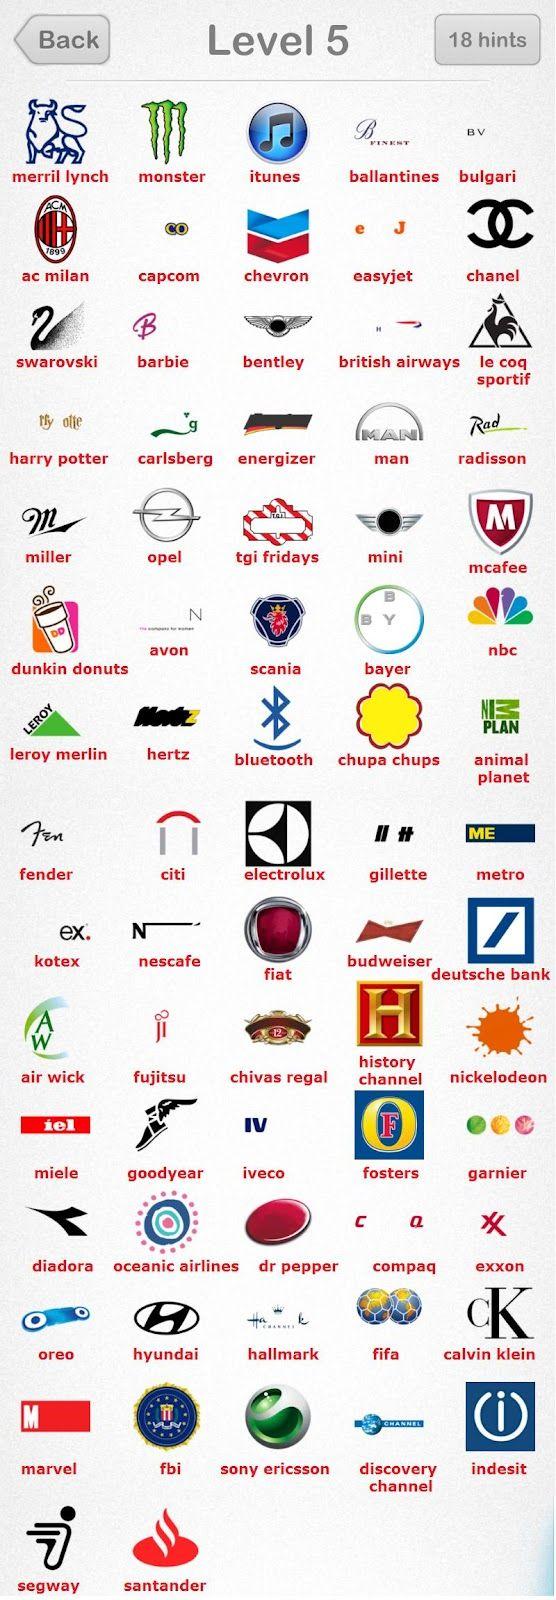 Red E Company Logo - Free Company Logos | Logos Design Favorite